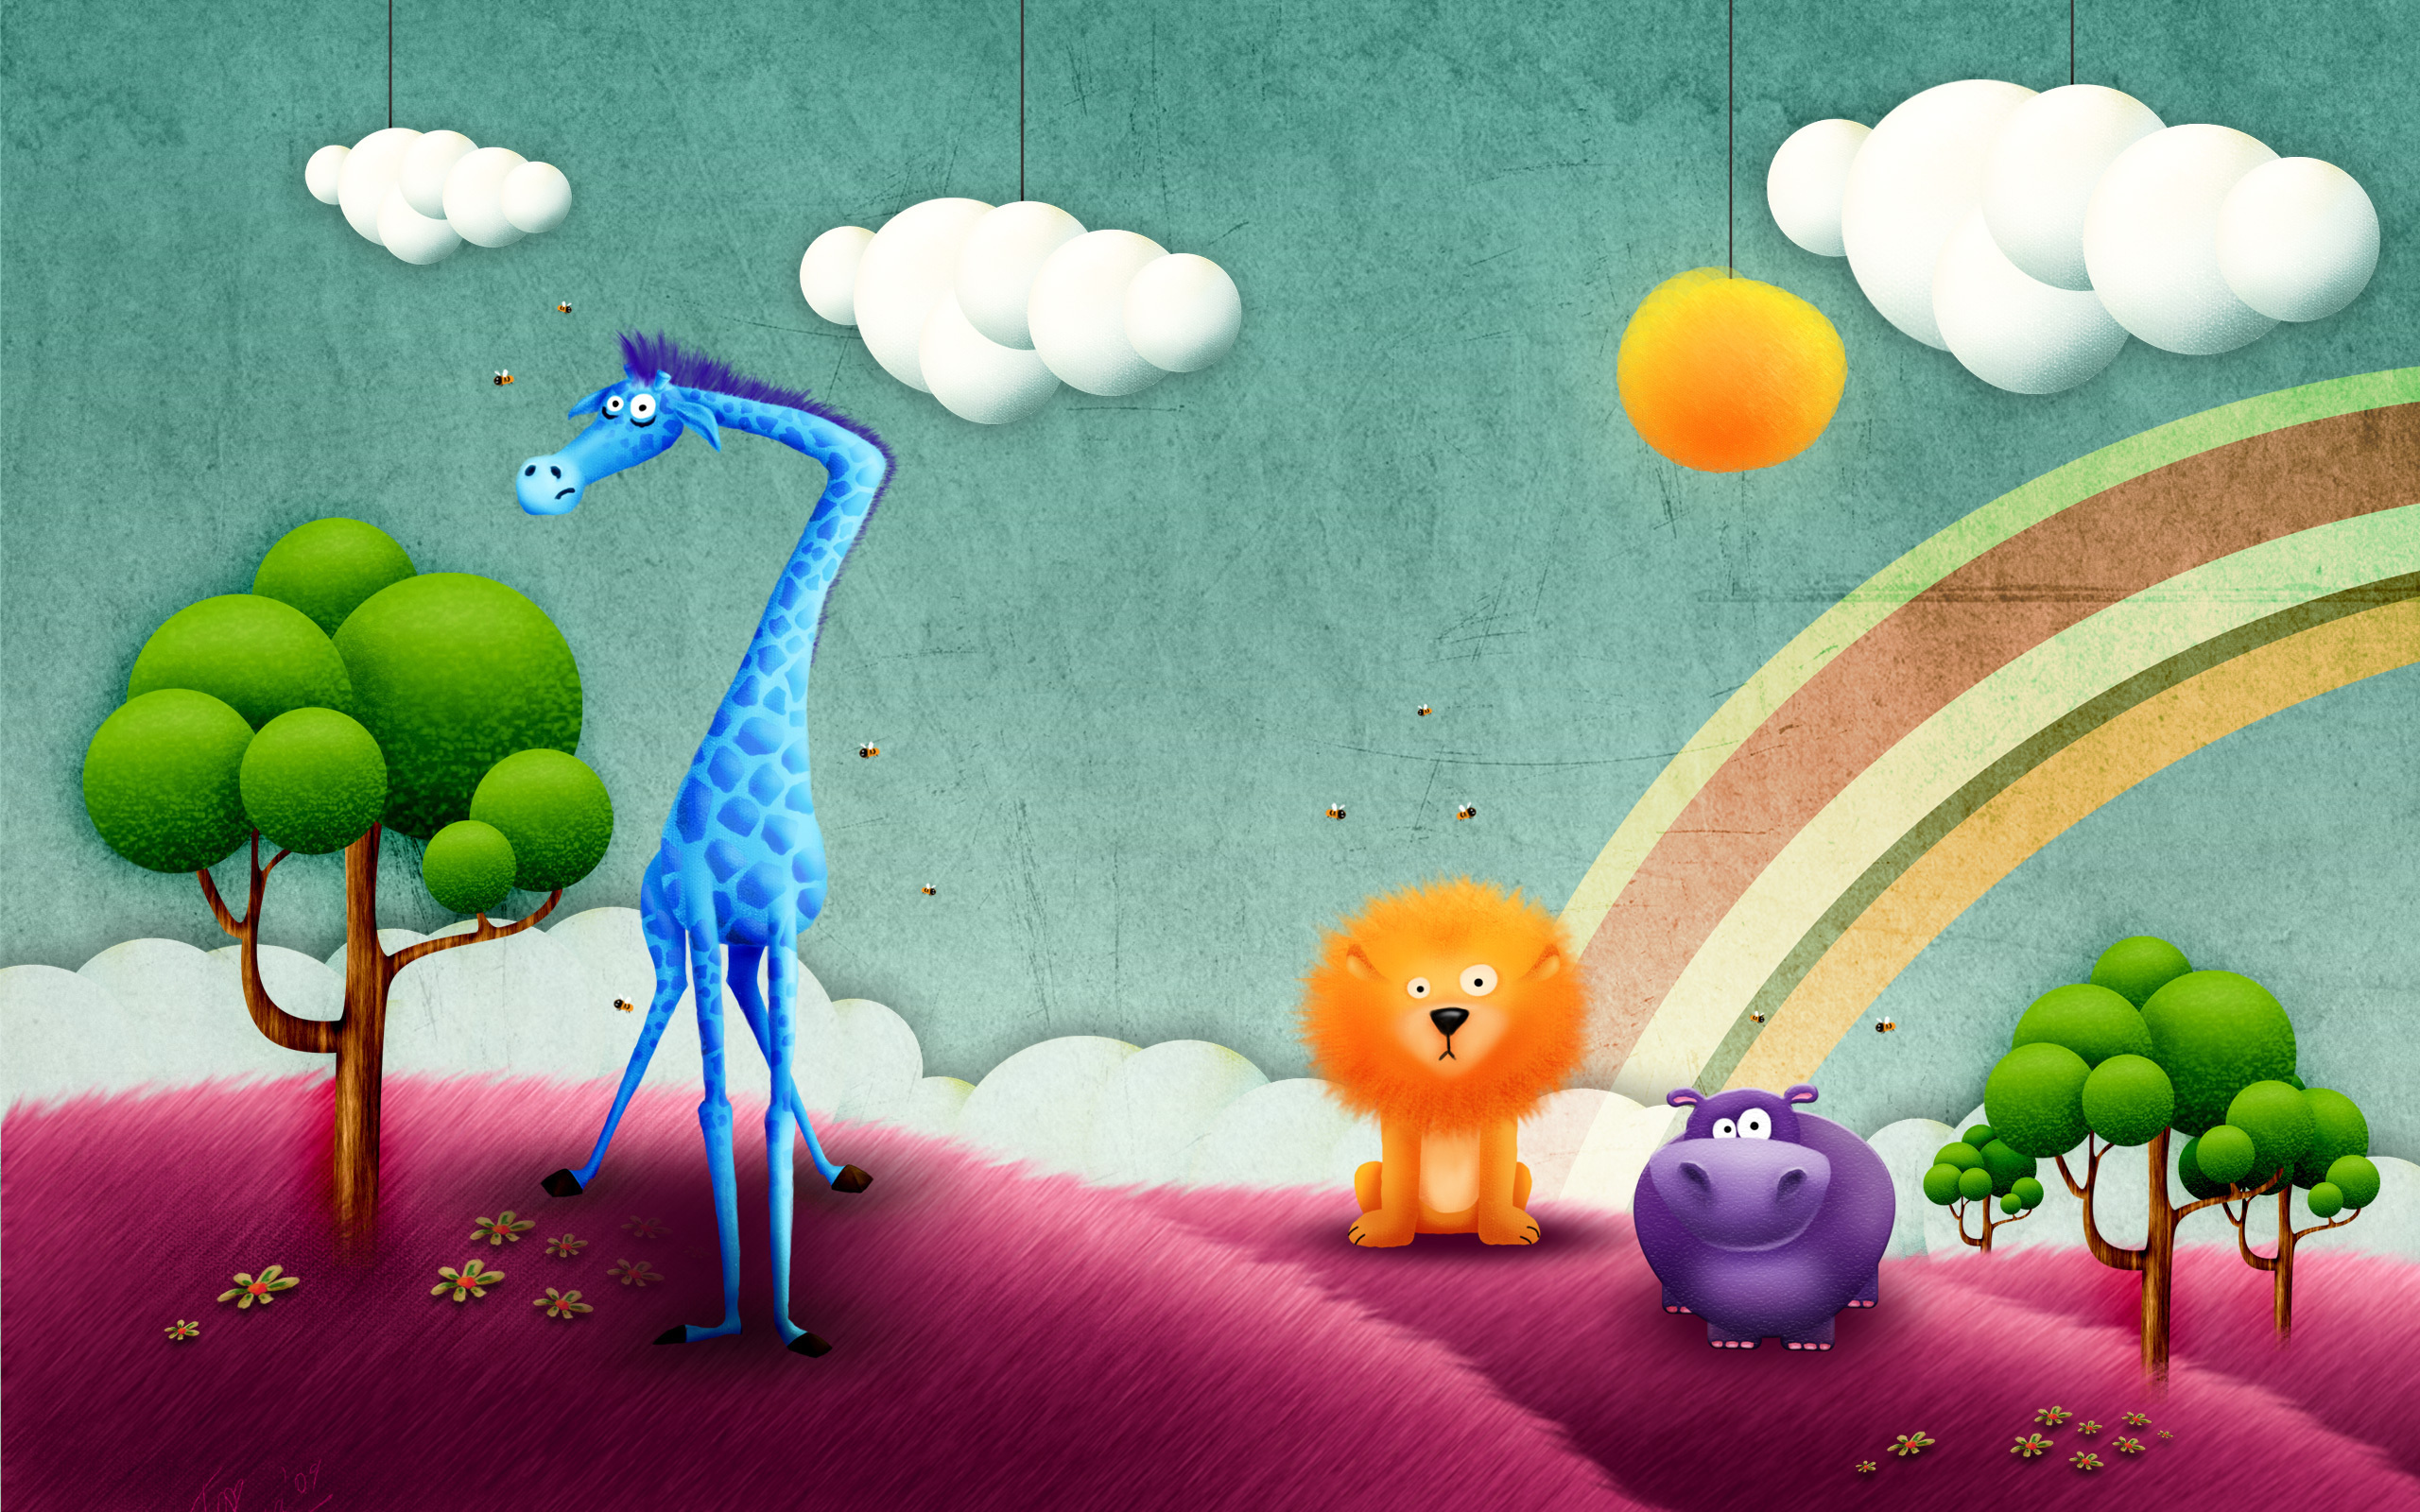 عکس کارتونی حیوانات جنگل شیر و زرافه برای کتاب های مصور داستانی کودکانه